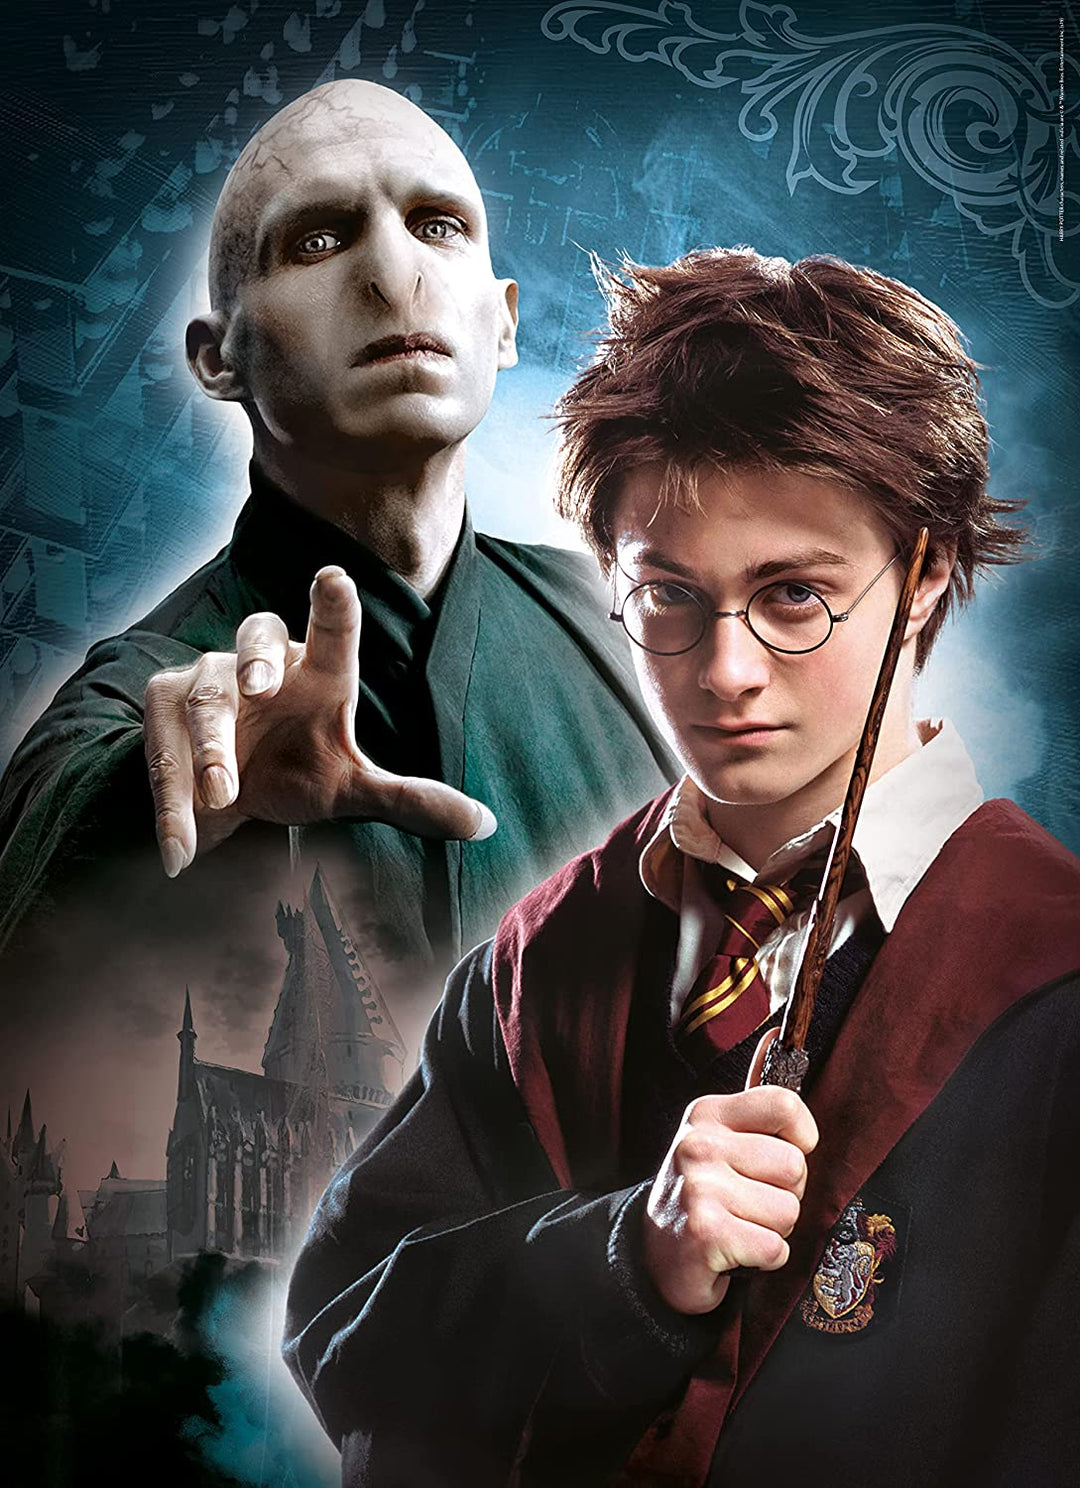 Clementoni 61884, Harry Potter-Puzzle für Erwachsene und Kinder, 3 x 1000 Teile, ab 10 Jahren